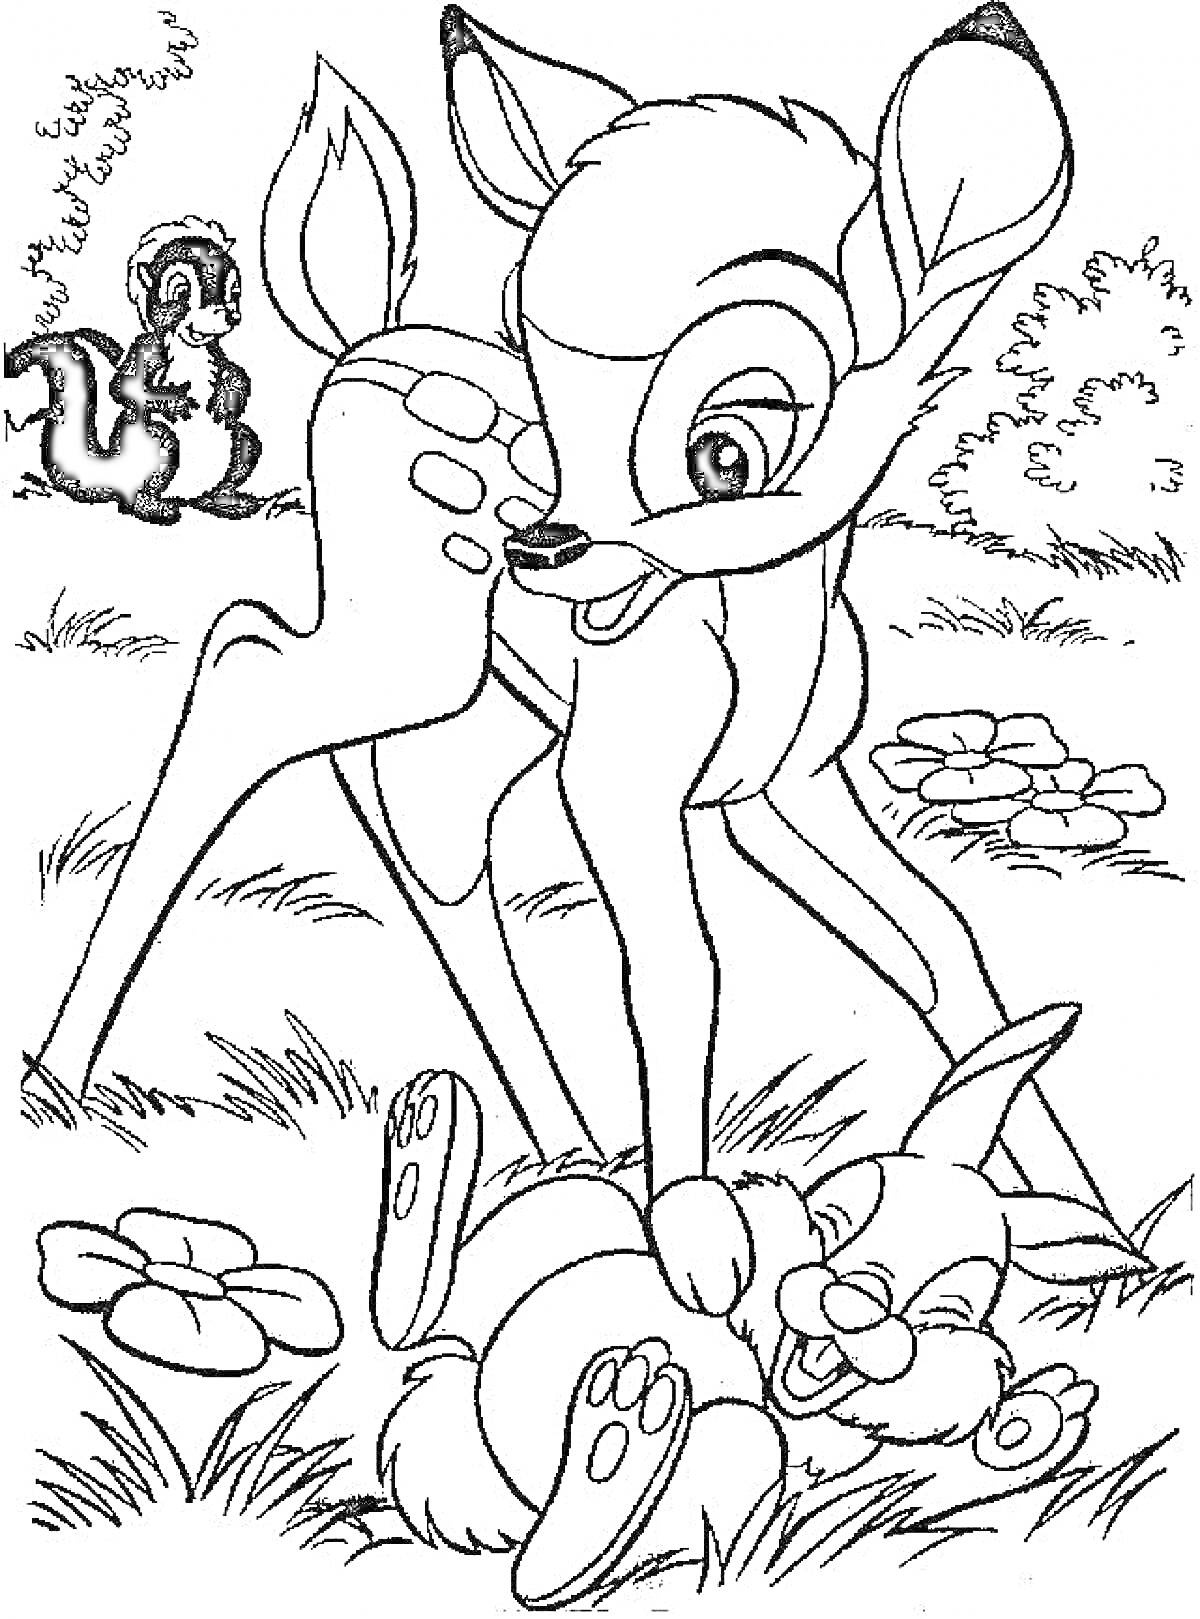  Бэмби с другом зайцем и смотрящим на них скунсом на лугу с цветами